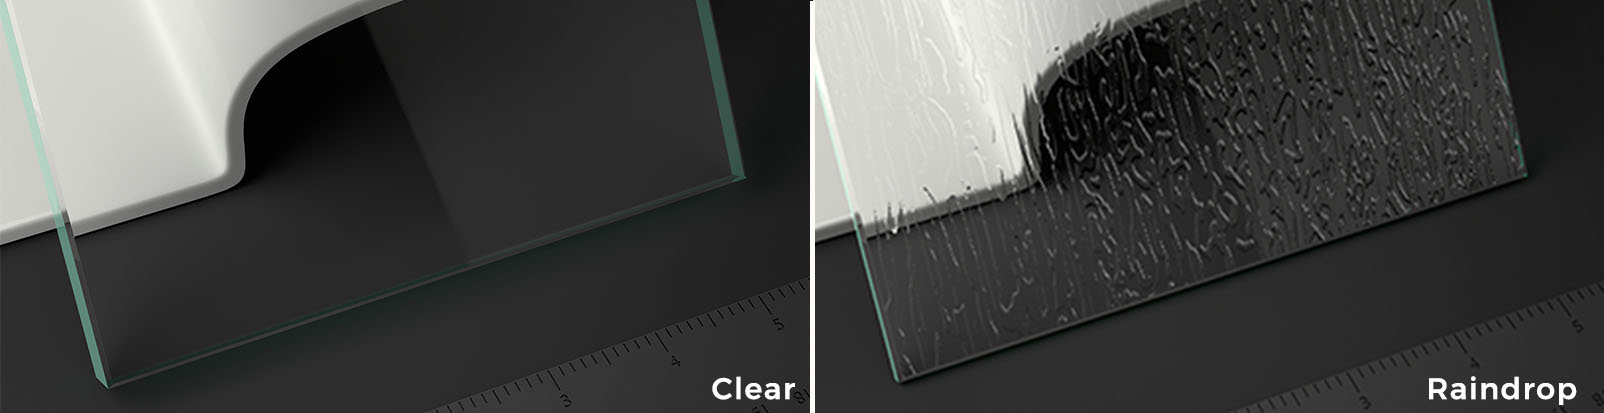 clear, paris point, raindrop & prism glass types